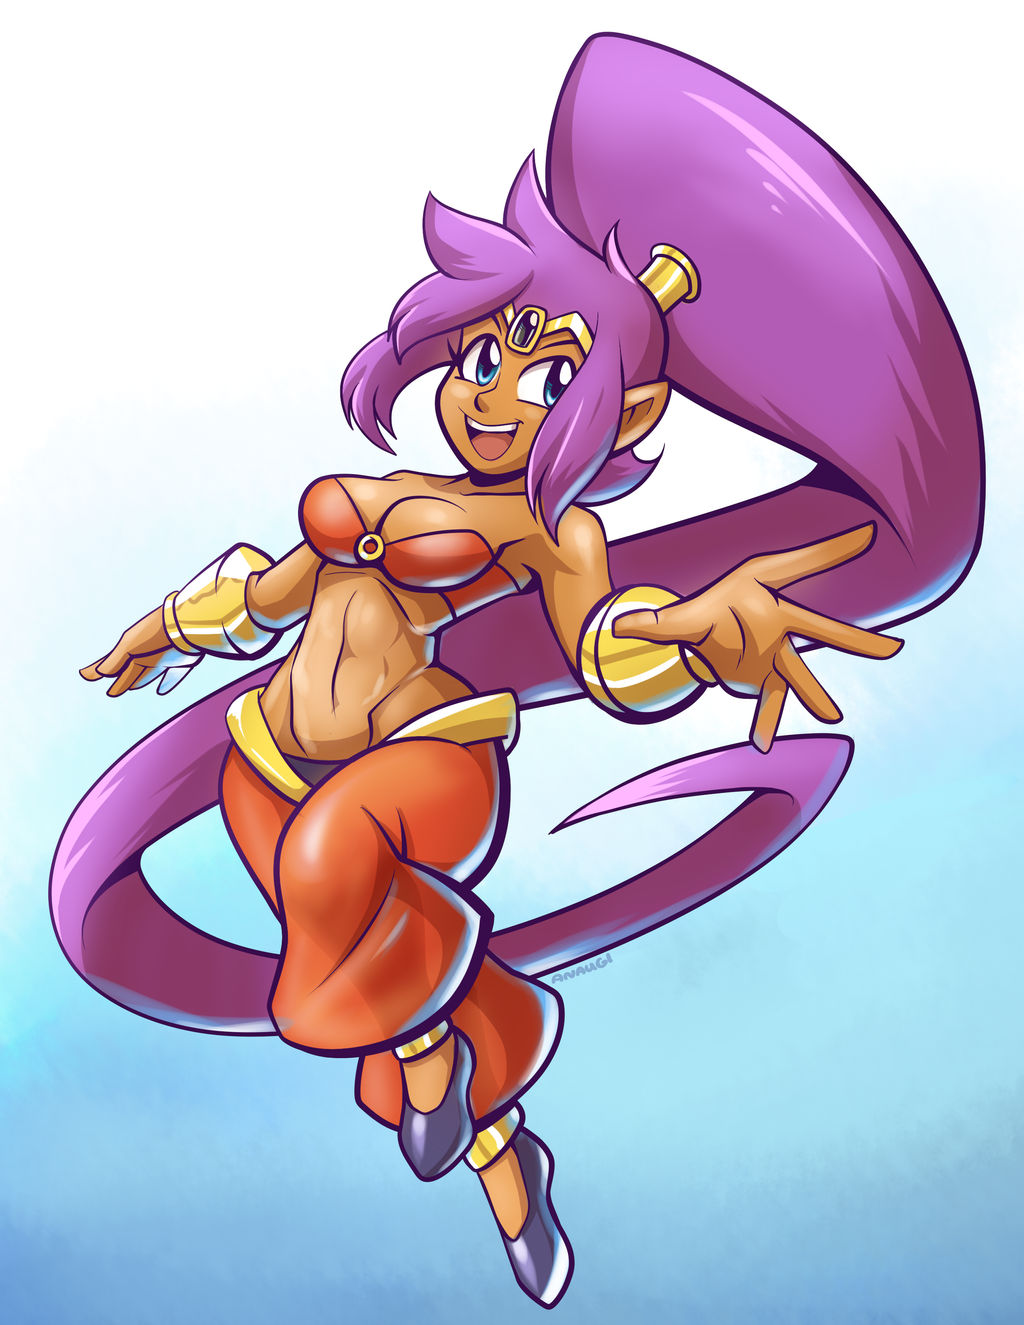 Shantae Again